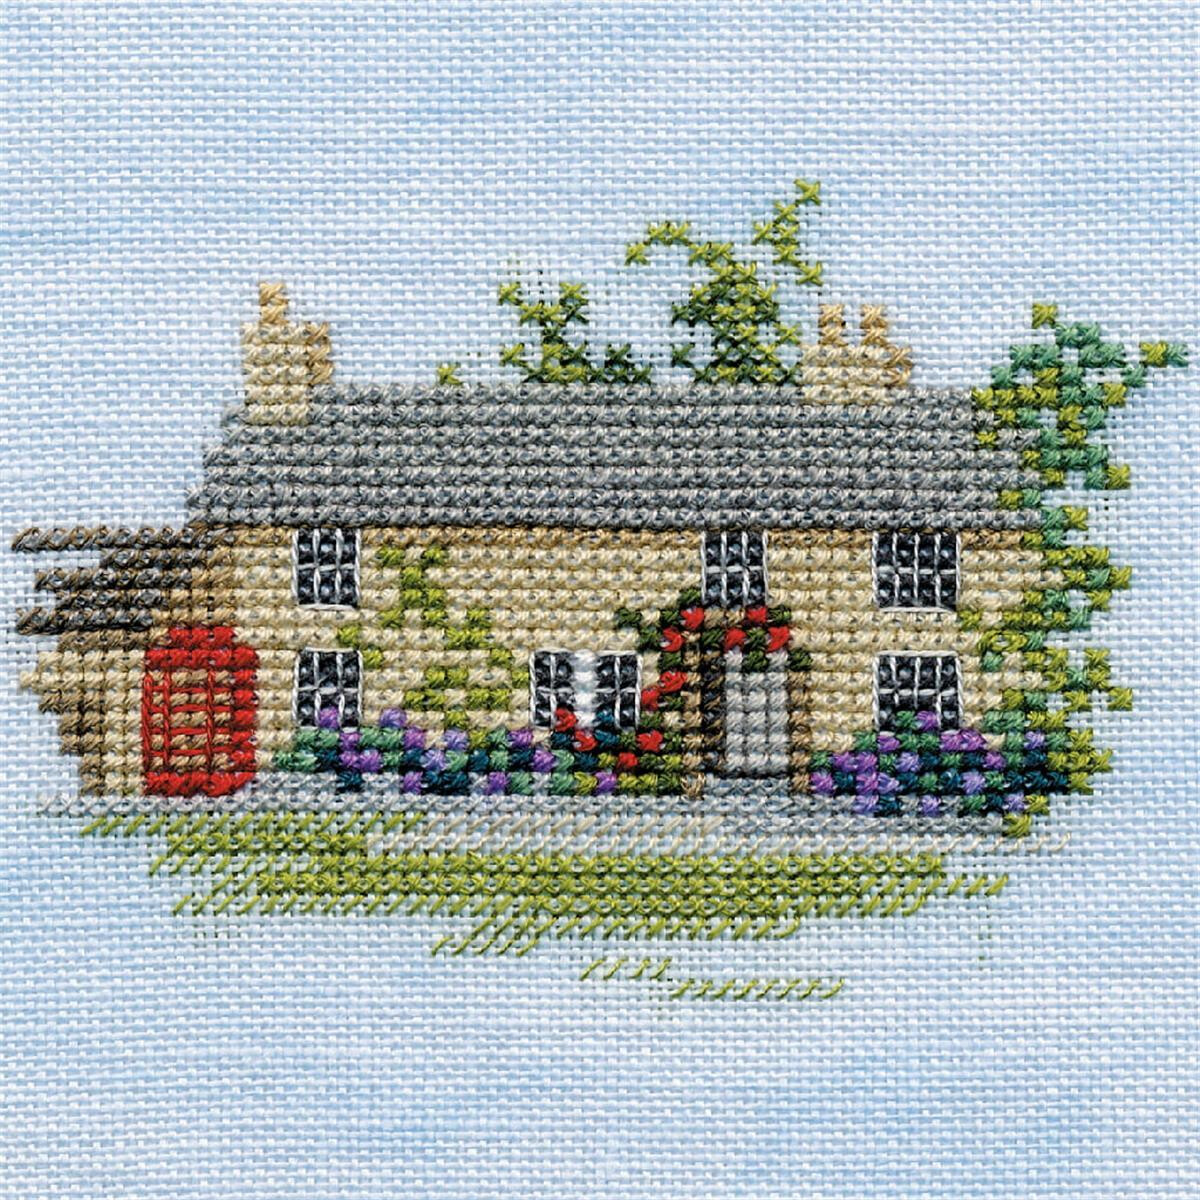 Immagine a punto croce di un pittoresco cottage con tetto...